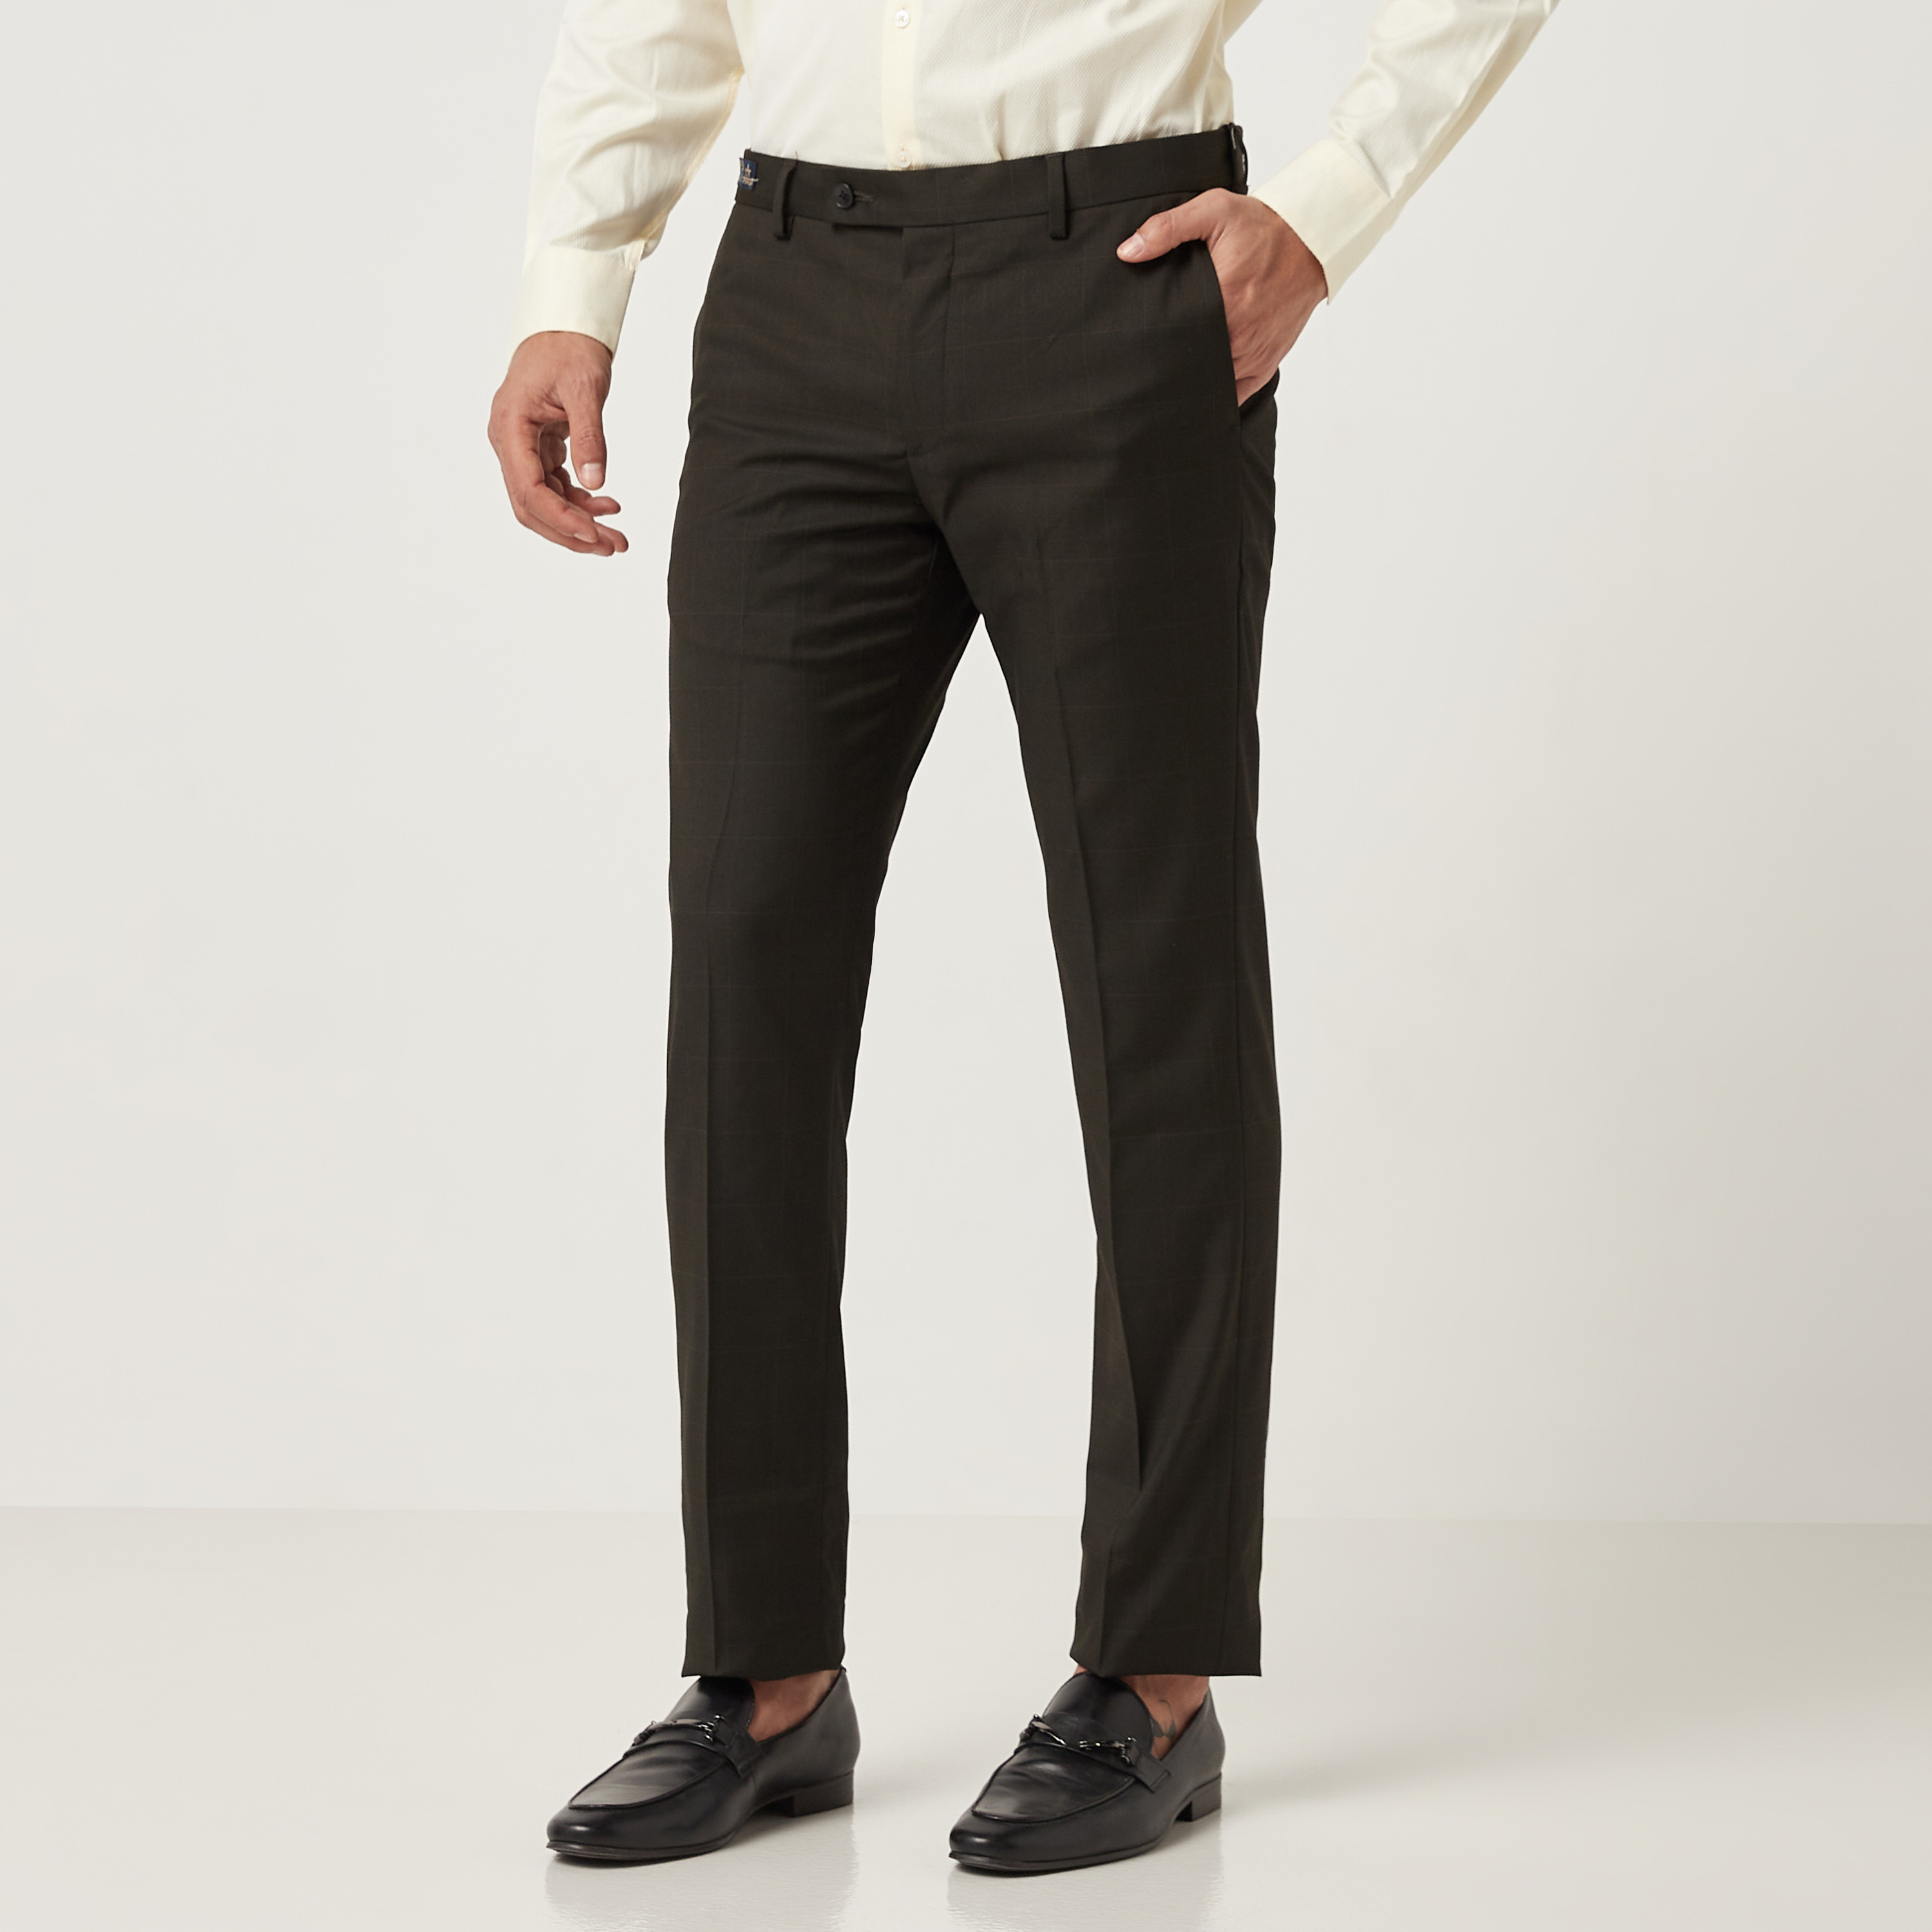 ARROW Regular Fit Men Brown Trousers - Buy ARROW Regular Fit Men Brown  Trousers Online at Best Prices in India | Flipkart.com